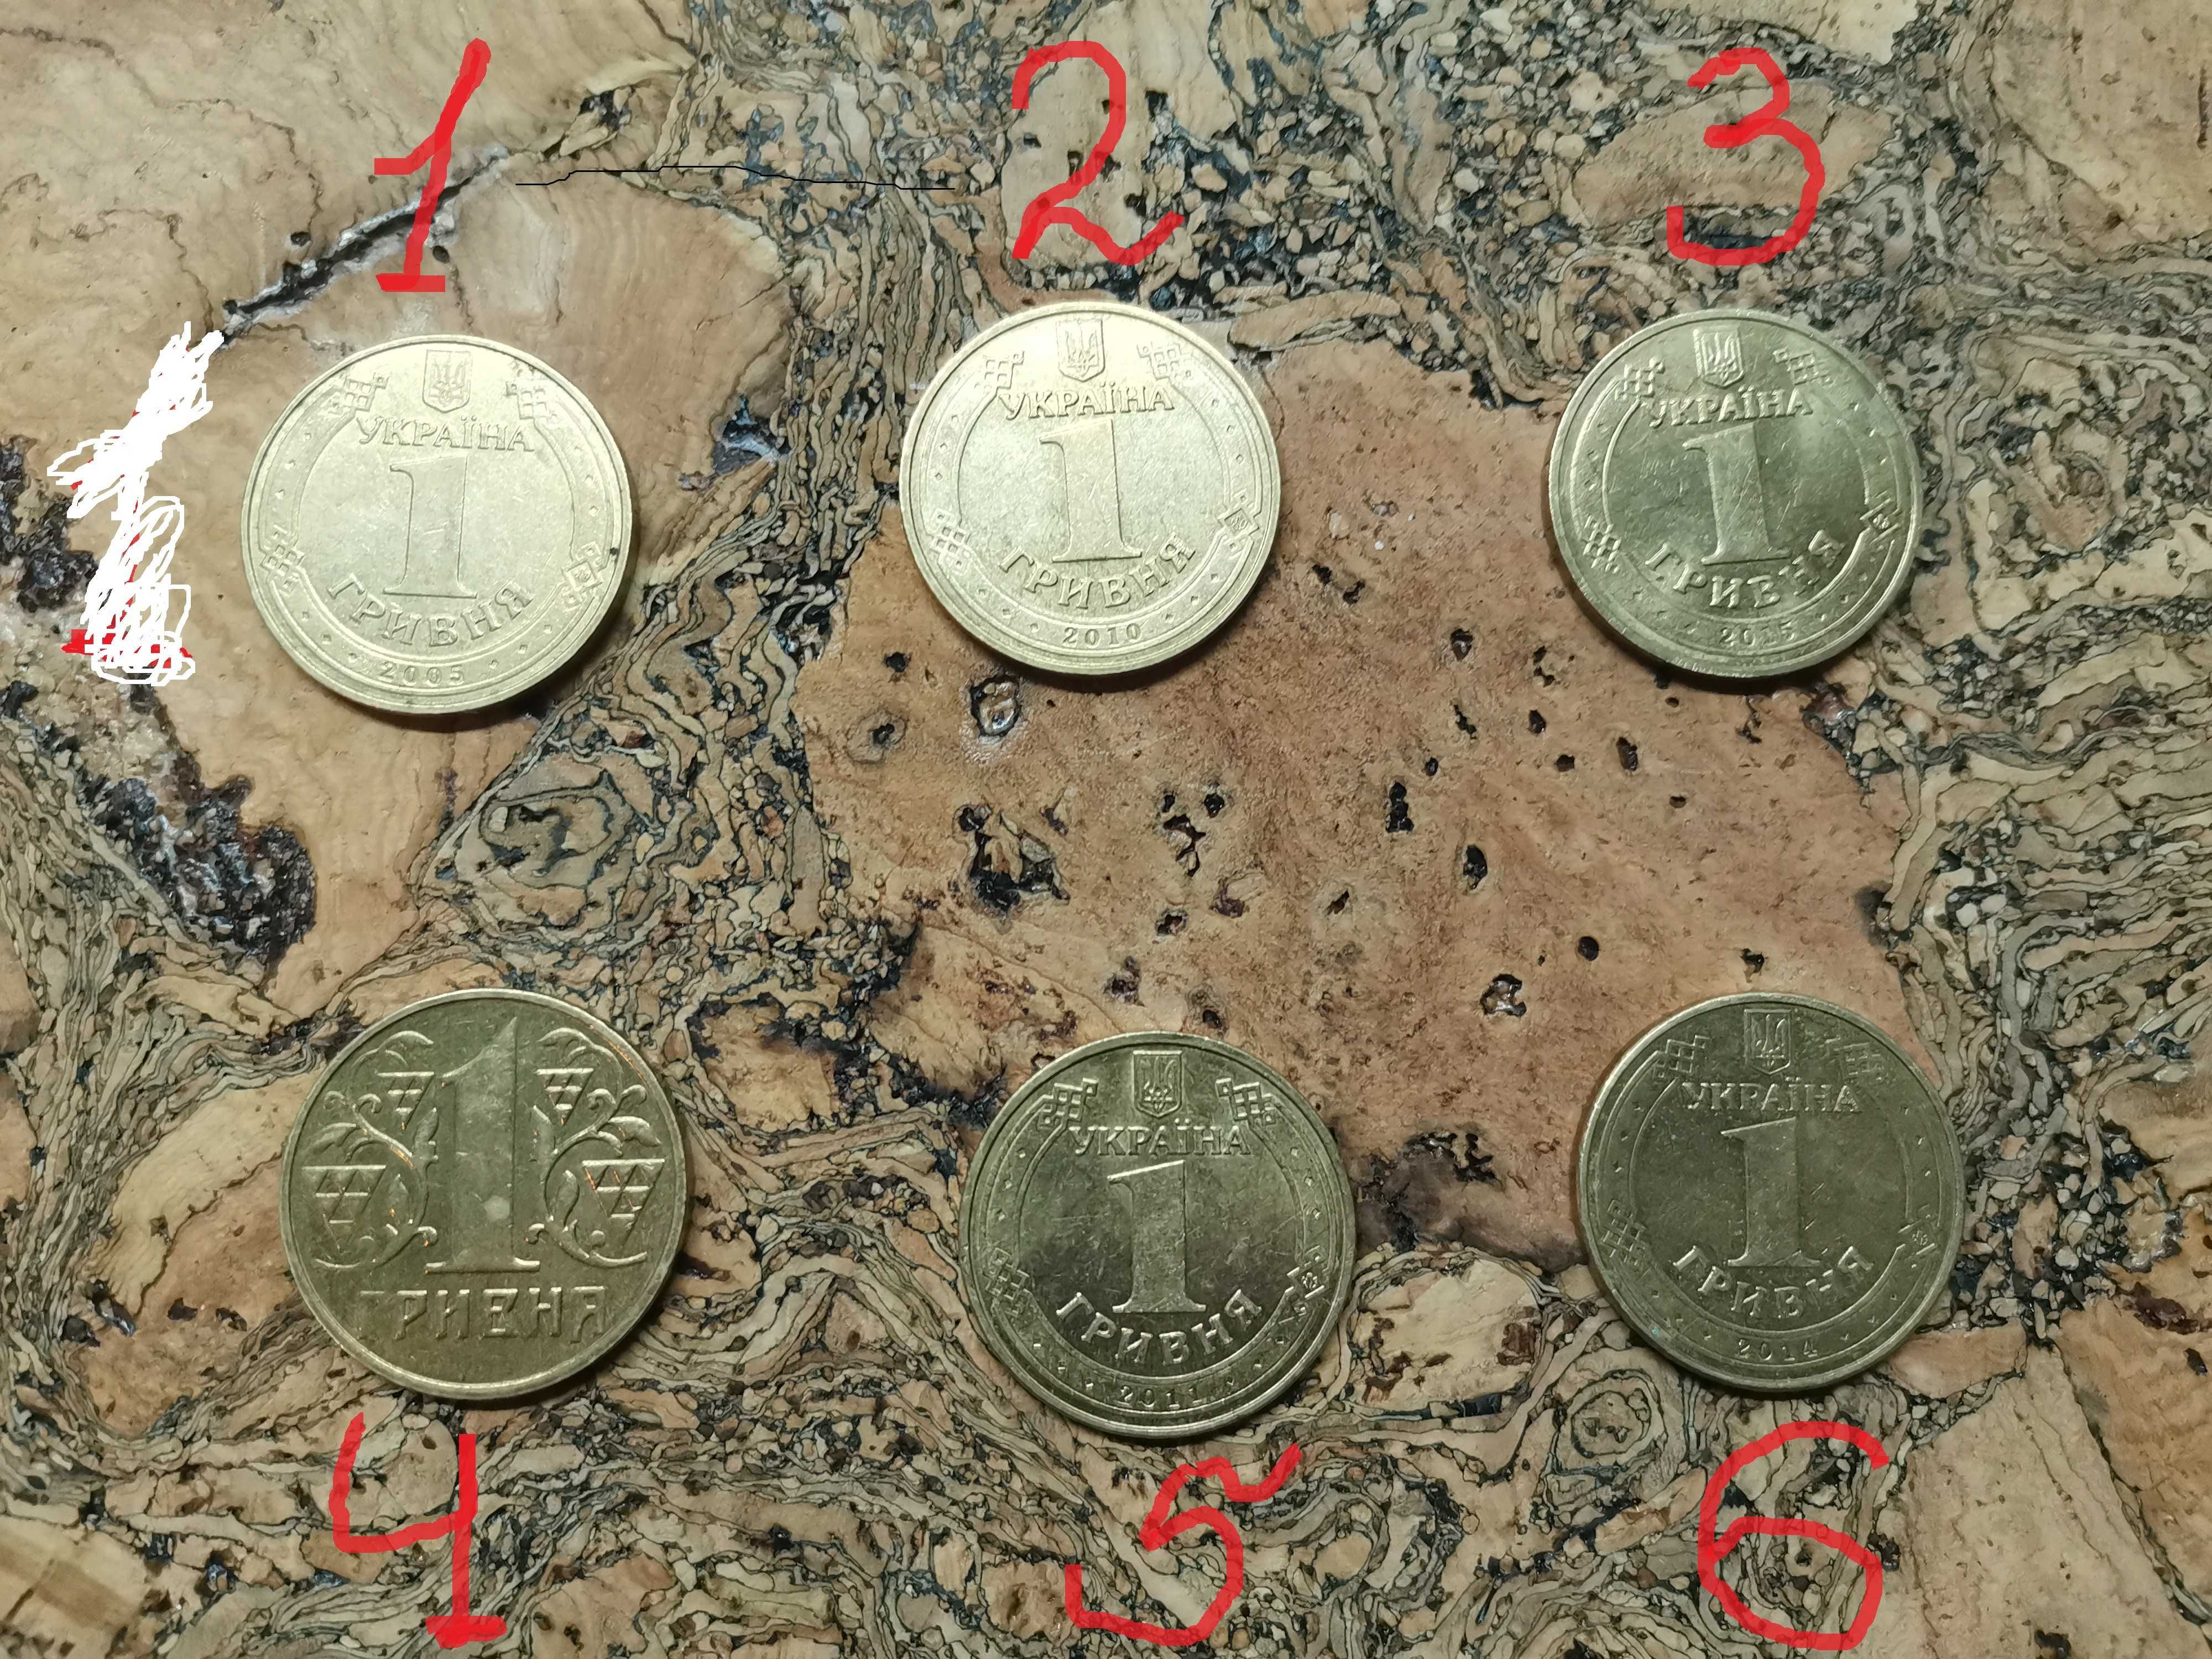 Монеты номиналом 1 грн.